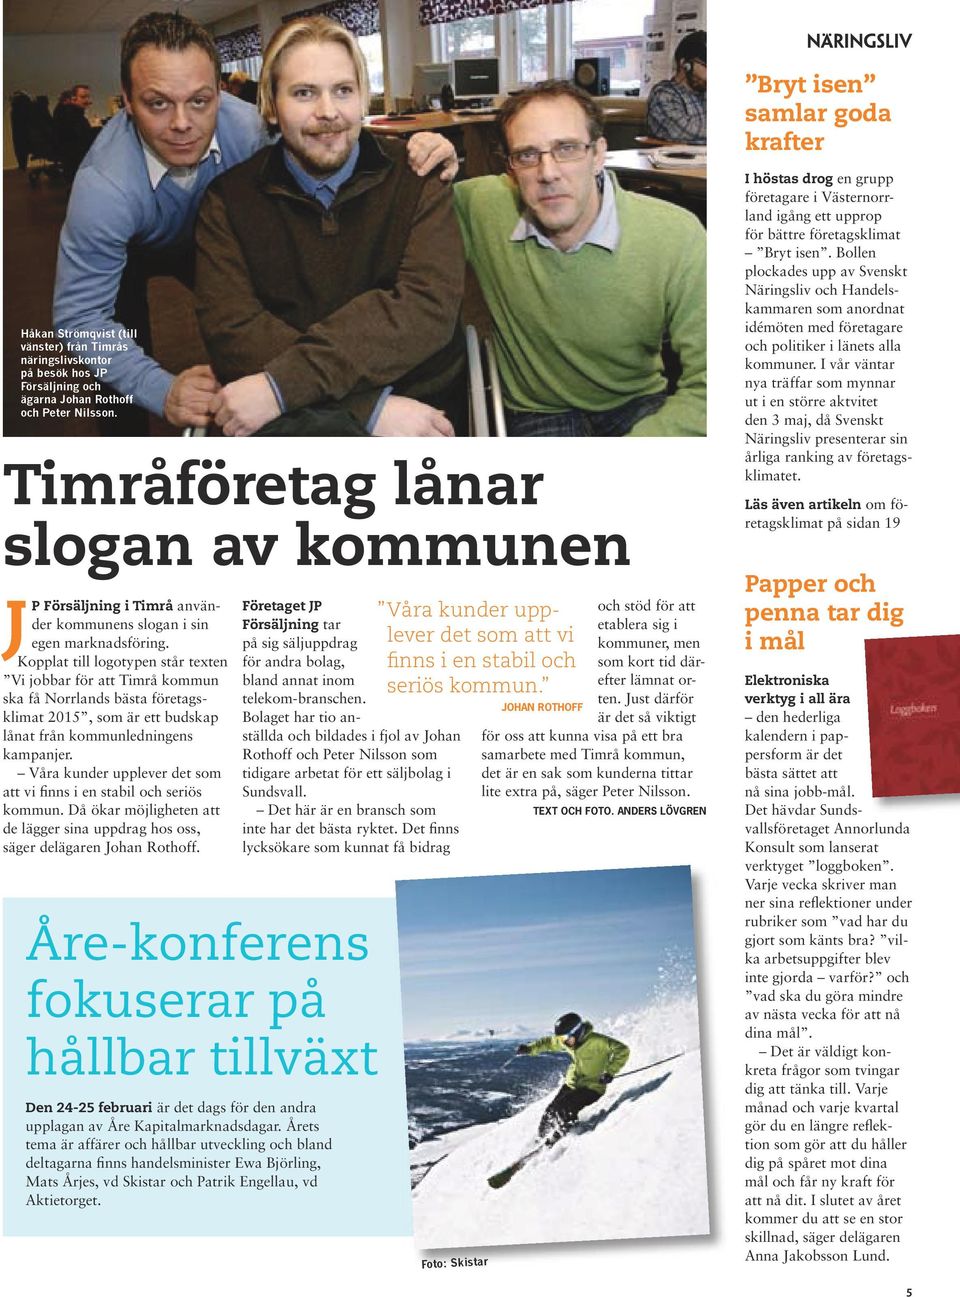 Kopplat till logotypen står texten Vi jobbar för att Timrå kommun ska få Norrlands bästa företagsklimat 2015, som är ett budskap lånat från kommunledningens kampanjer.